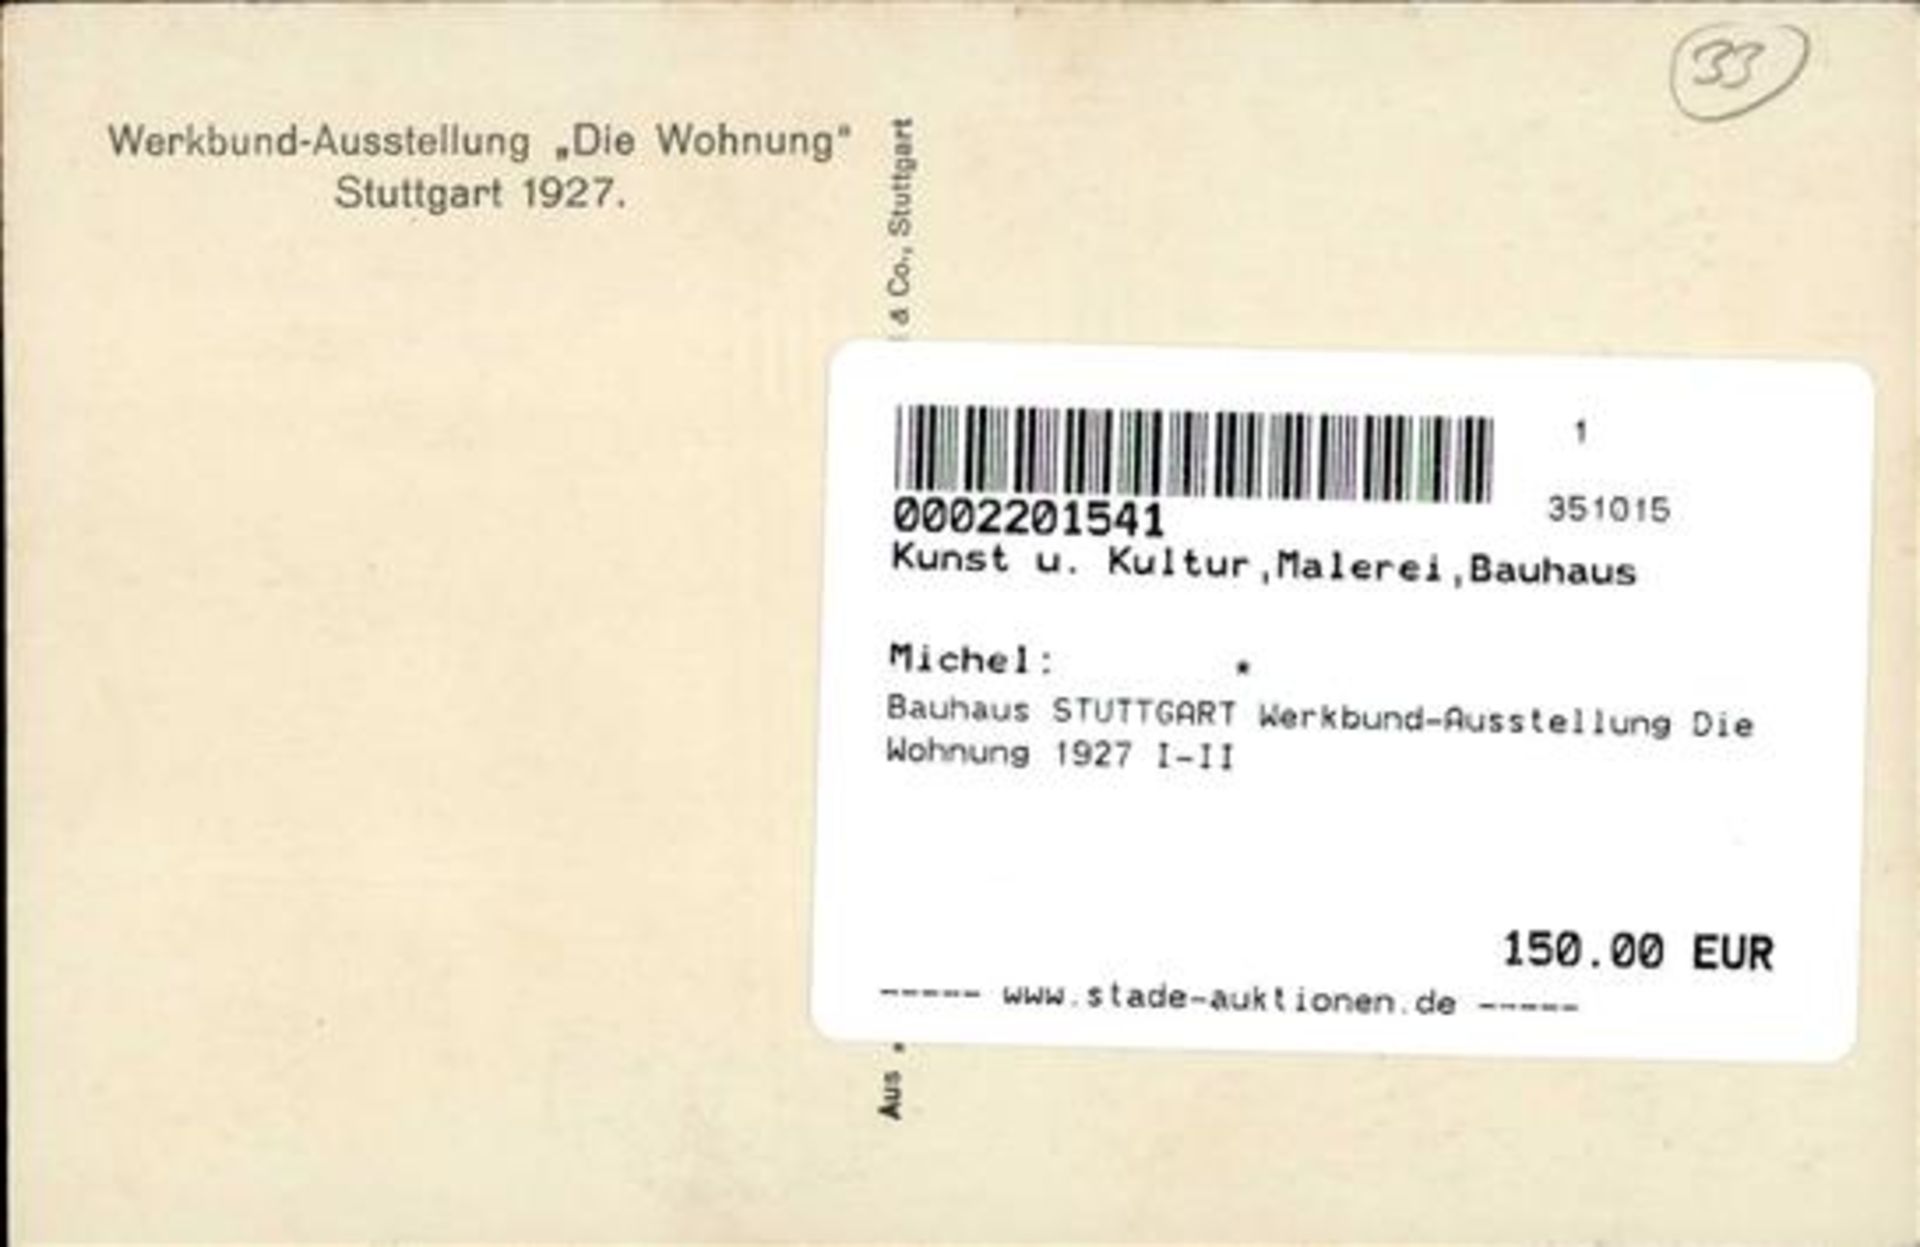 Bauhaus STUTTGART Werkbund-Ausstellung Die Wohnung 1927 I-II - Image 2 of 2